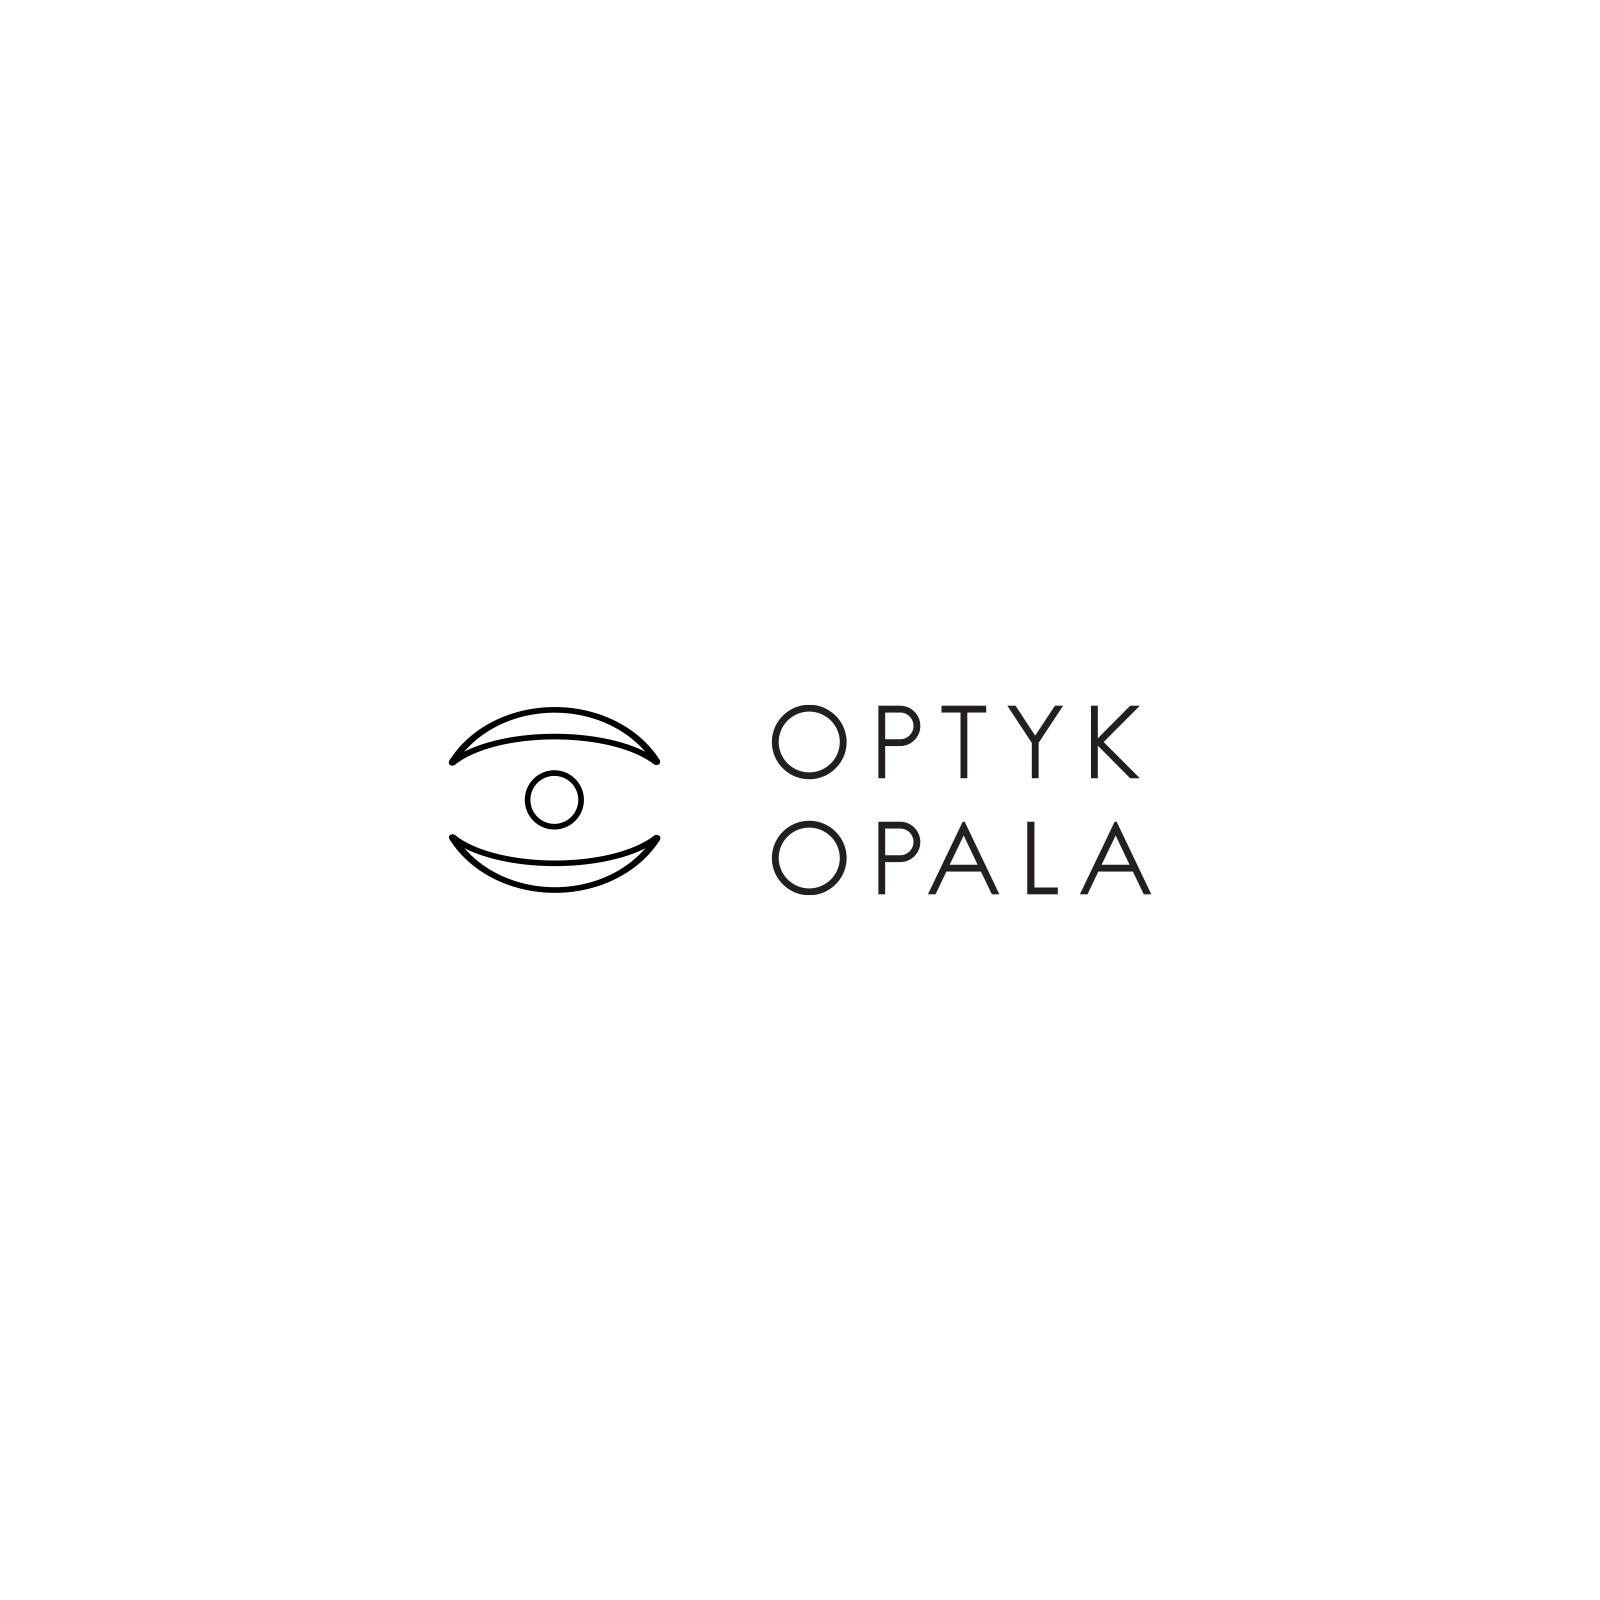 http://spokoto.pl/wp-content/uploads/2020/03/optyk-opala_logo.jpg